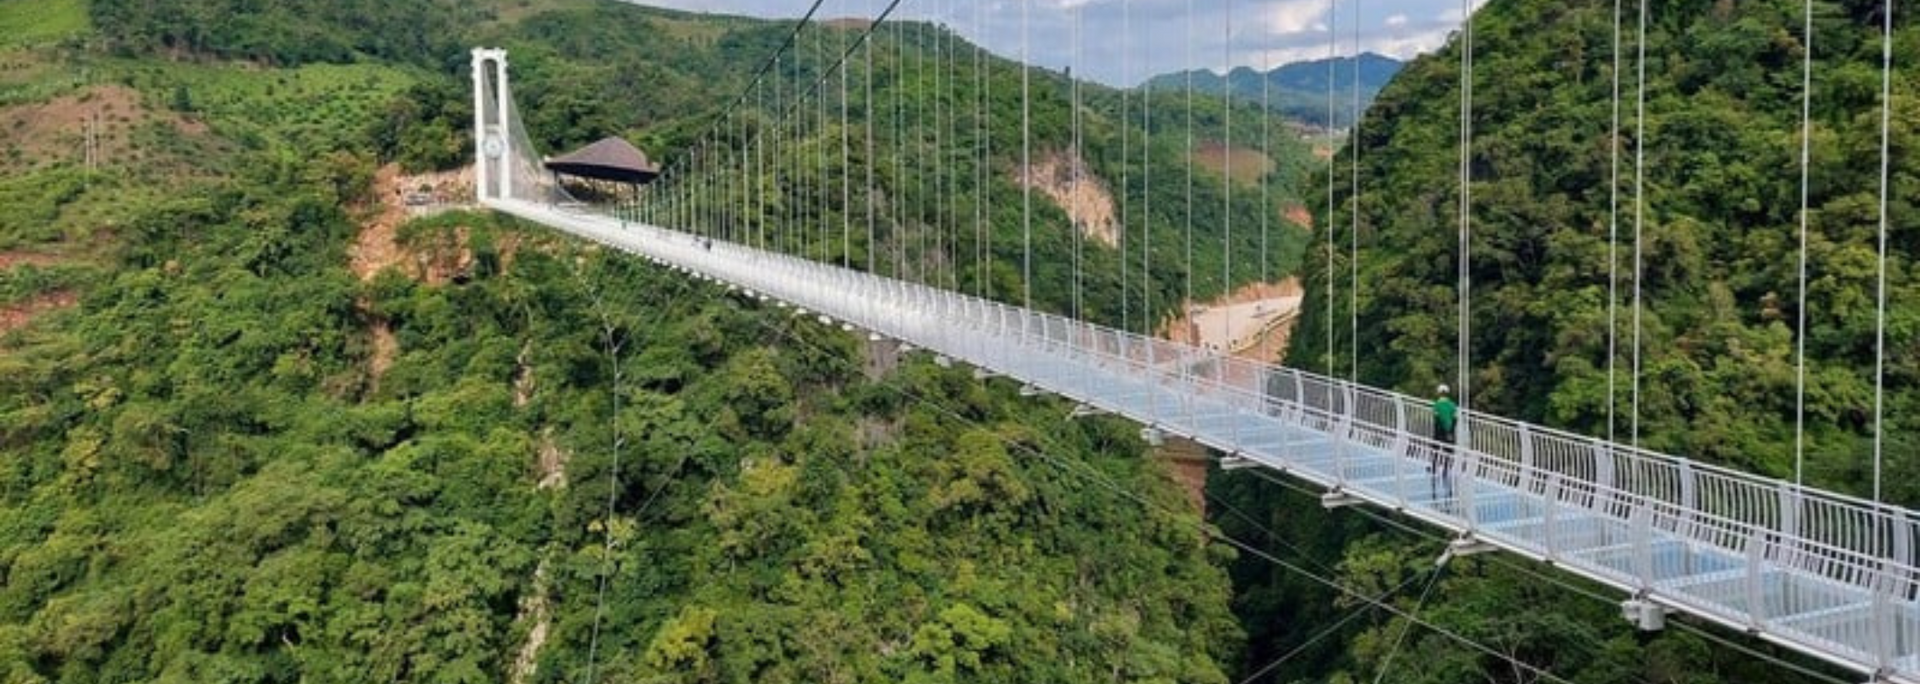 Picture of Bach Long Bridge, Vietnam